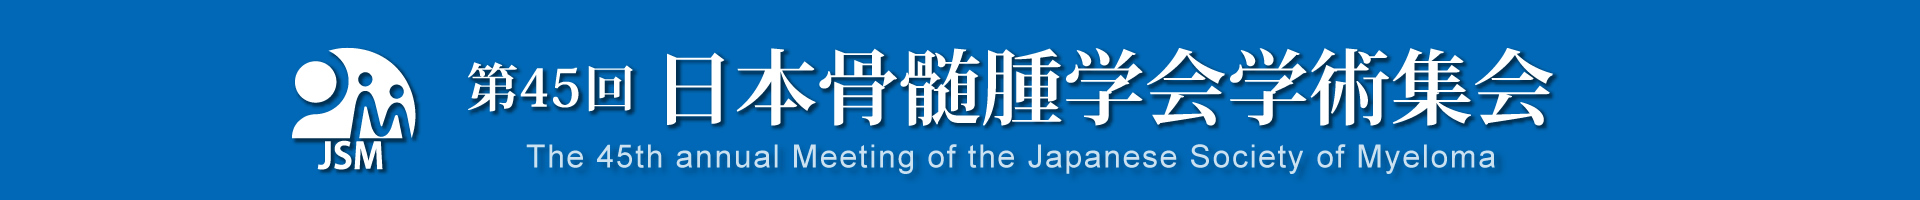 第45回日本骨髄腫学会学術集会
The 45th annual Meeting of the Japanses Society of Myeloma